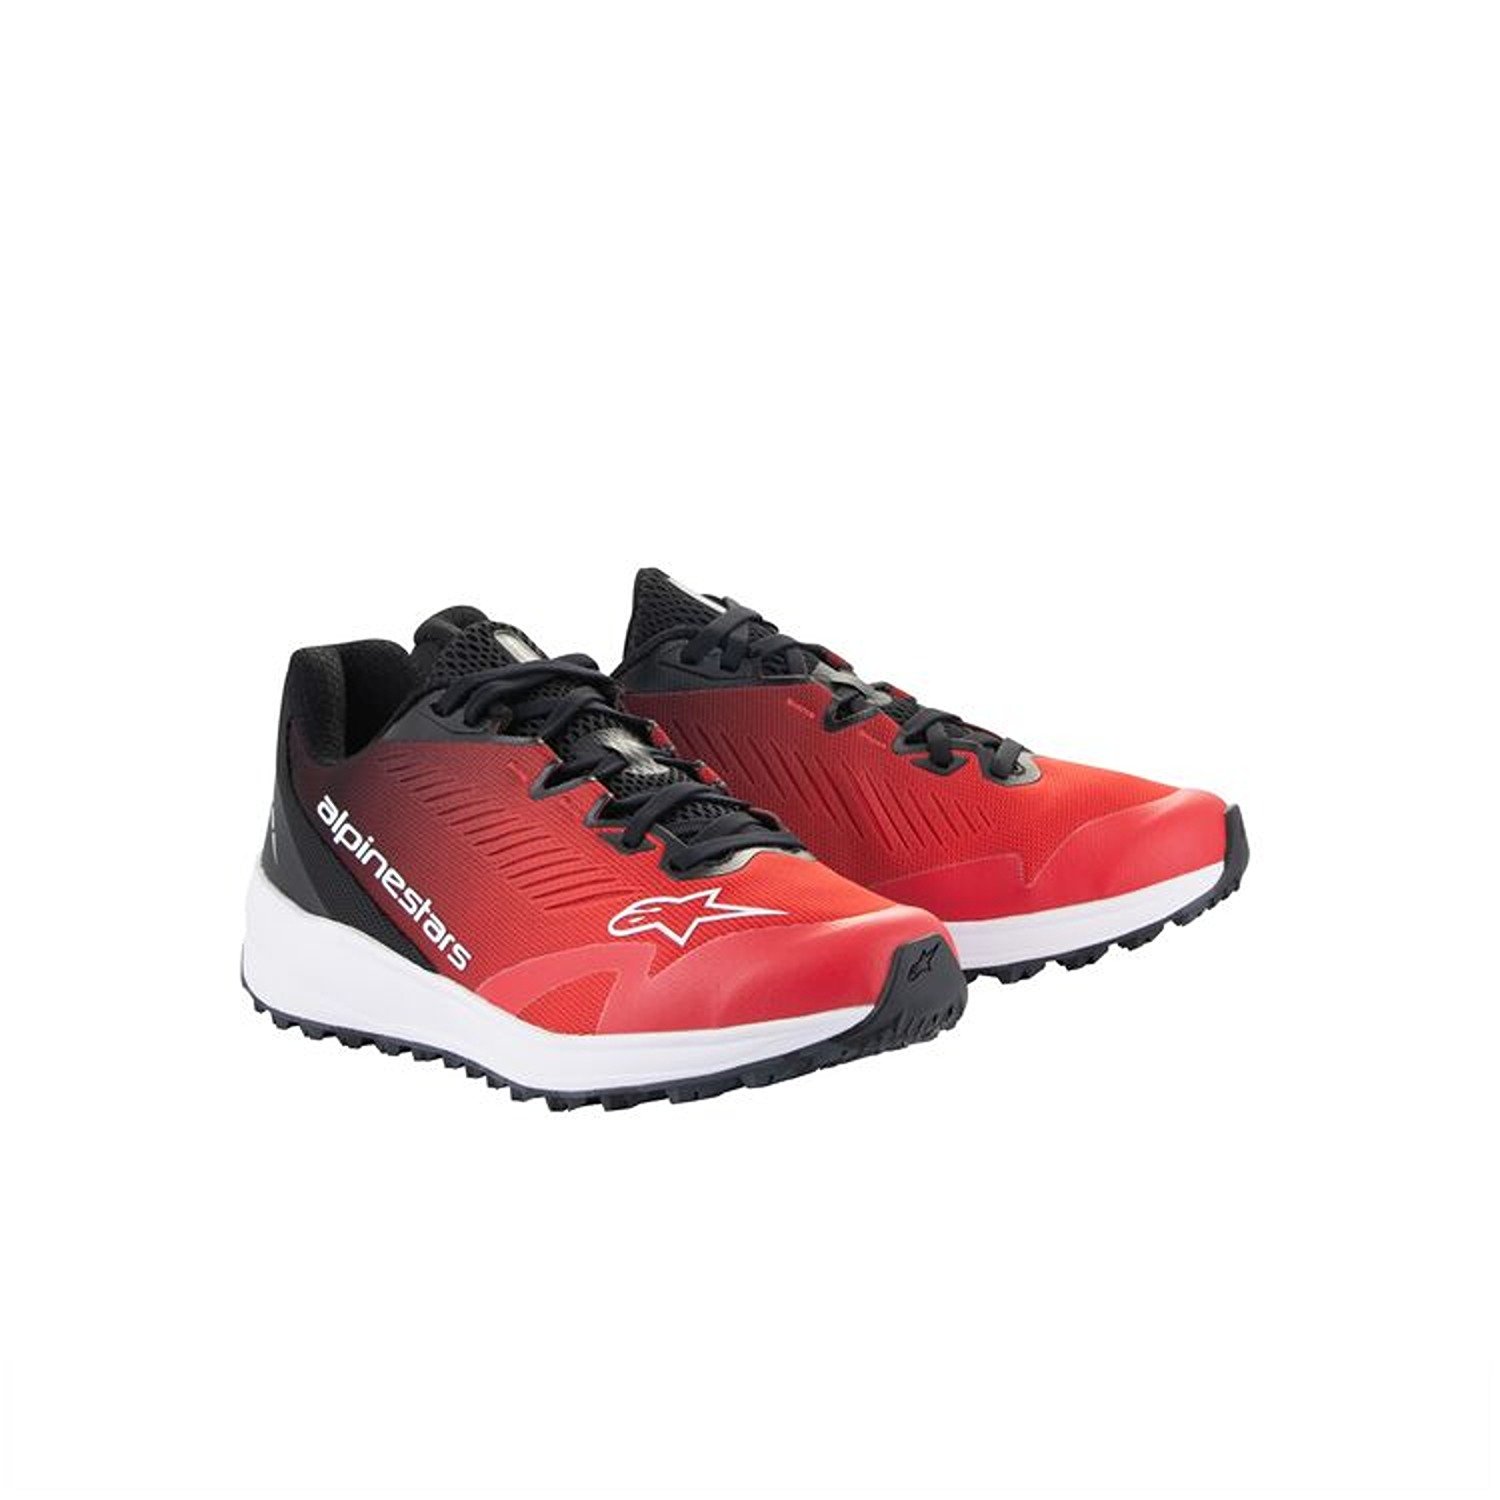 Image of Alpinestars Meta Road V2 Shoes Red Black White Größe US 95